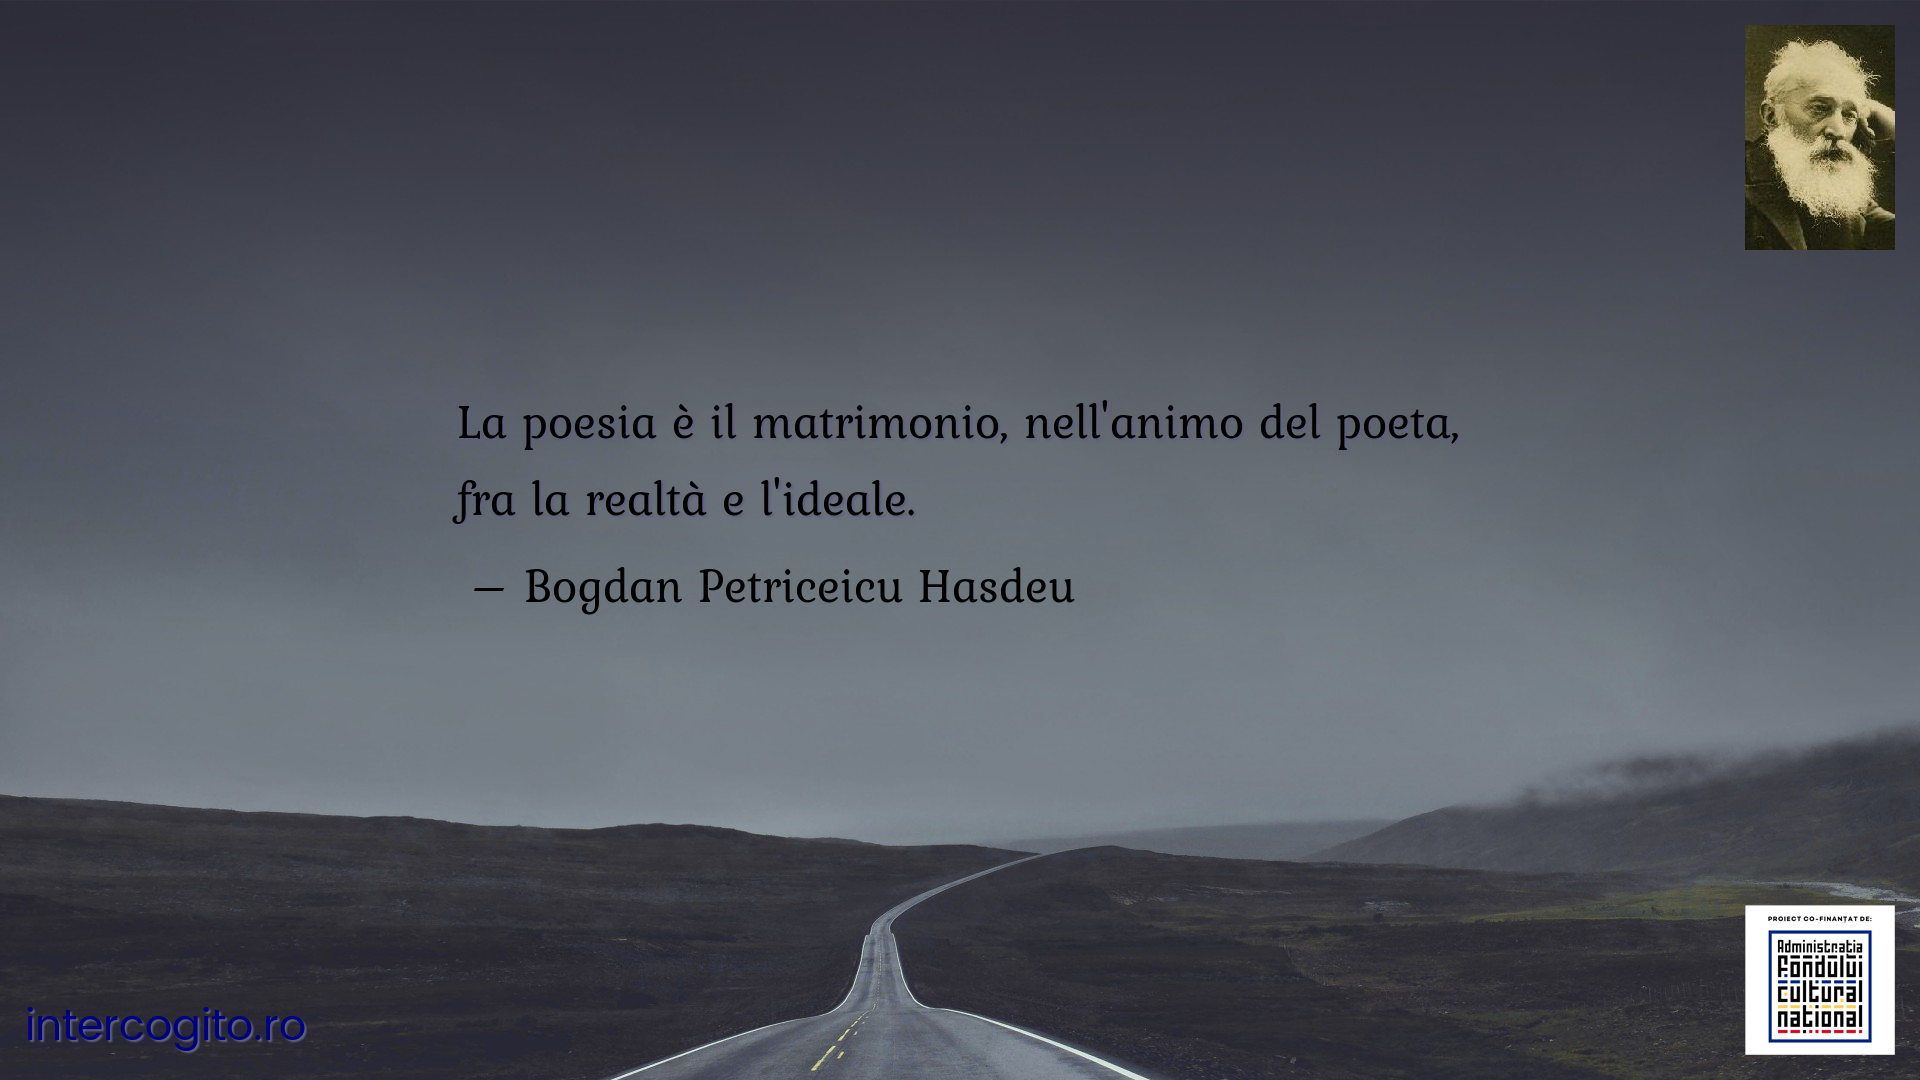 La poesia è il matrimonio, nell'animo del poeta, fra la realtà e l'ideale.